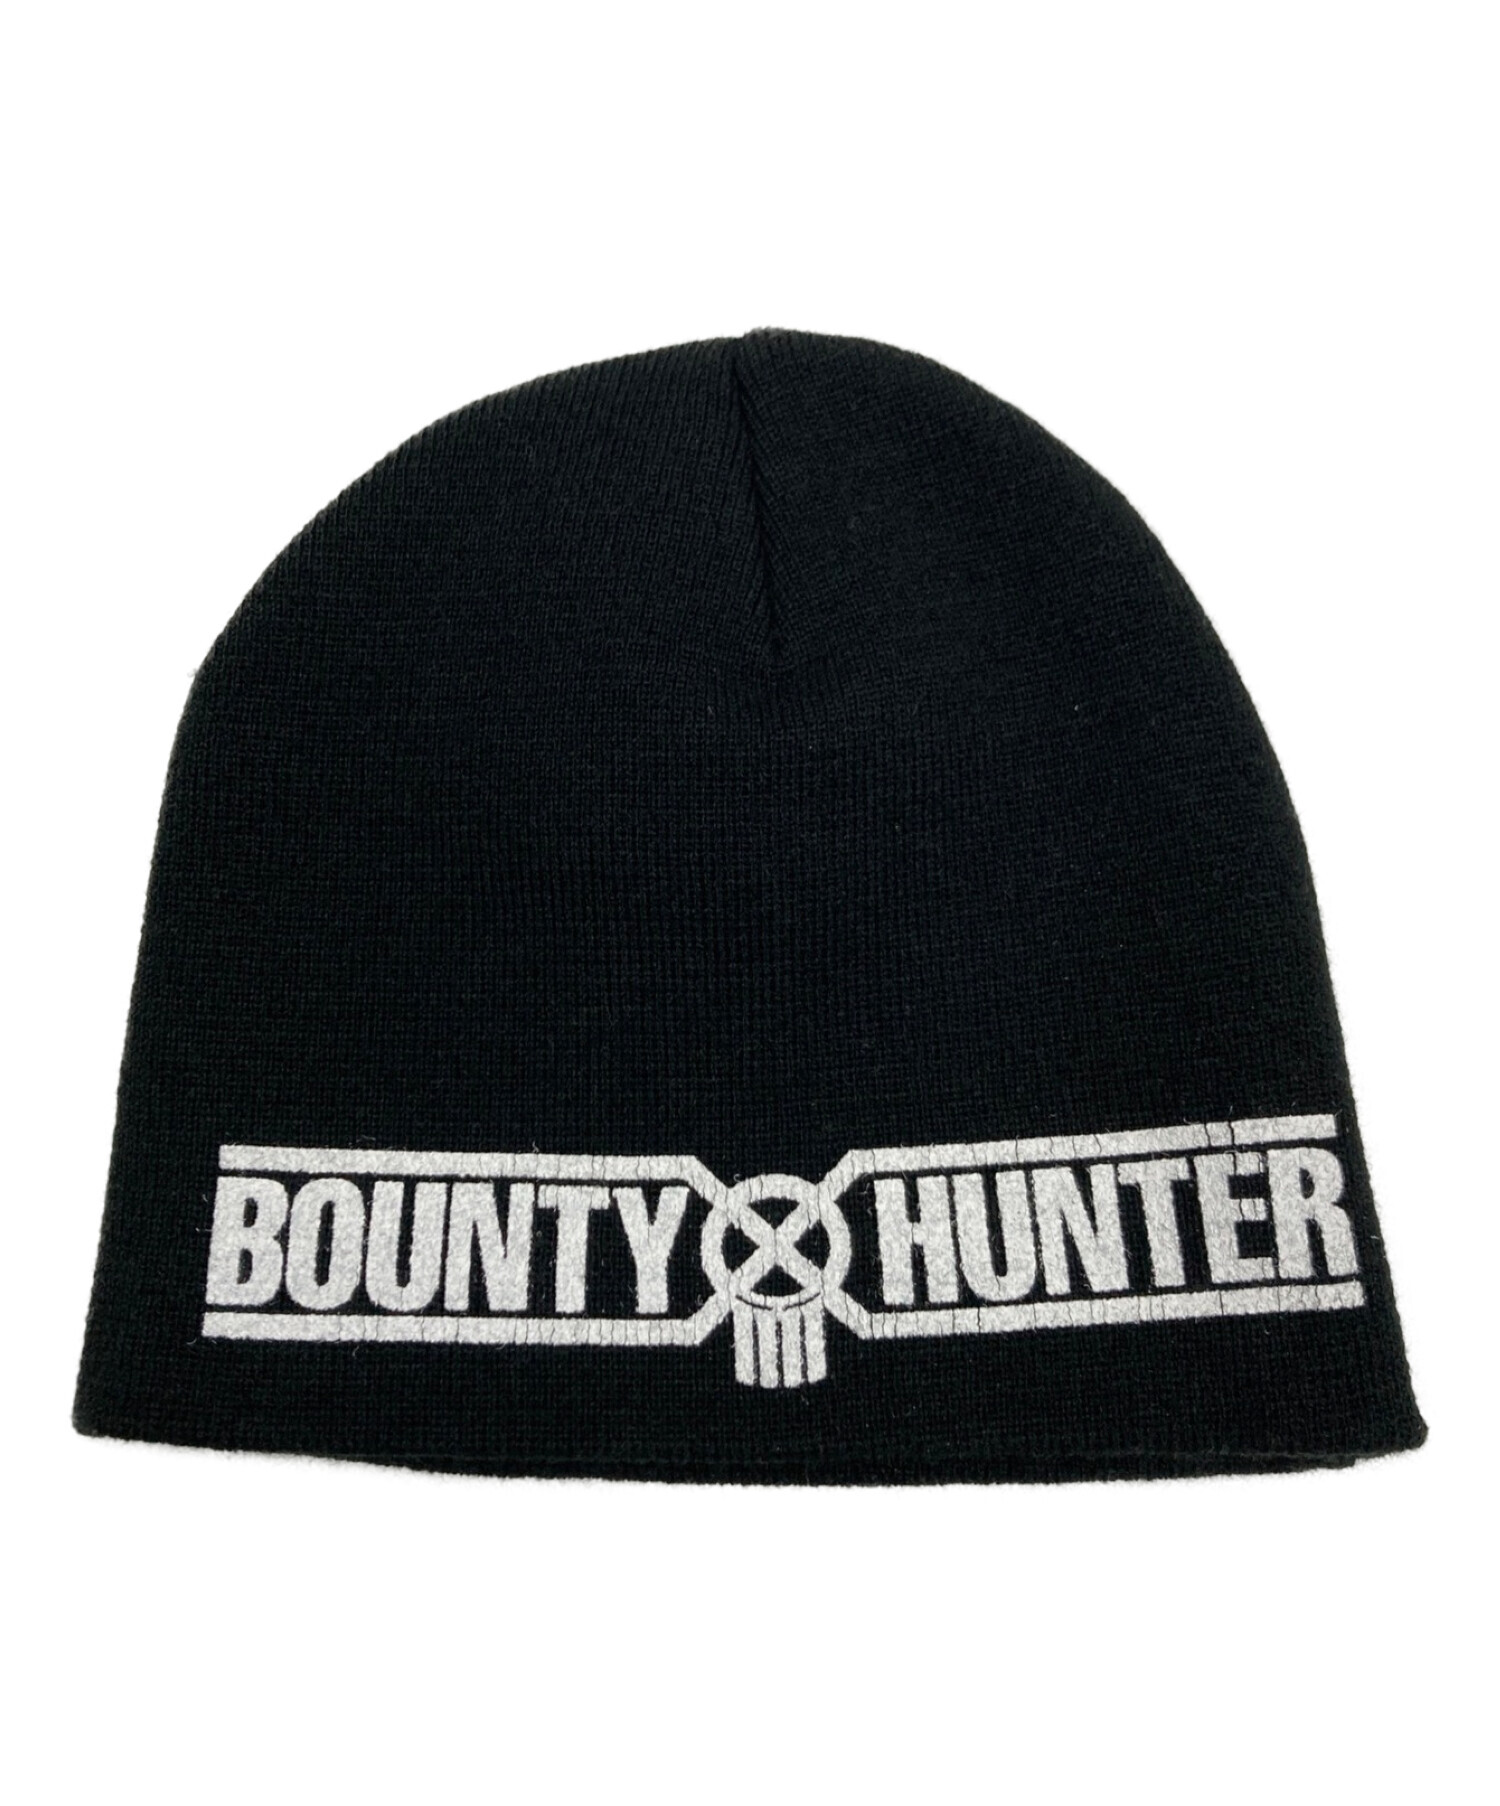 Supreme Bounty Hunter Beanieオンラインで購入しましたが